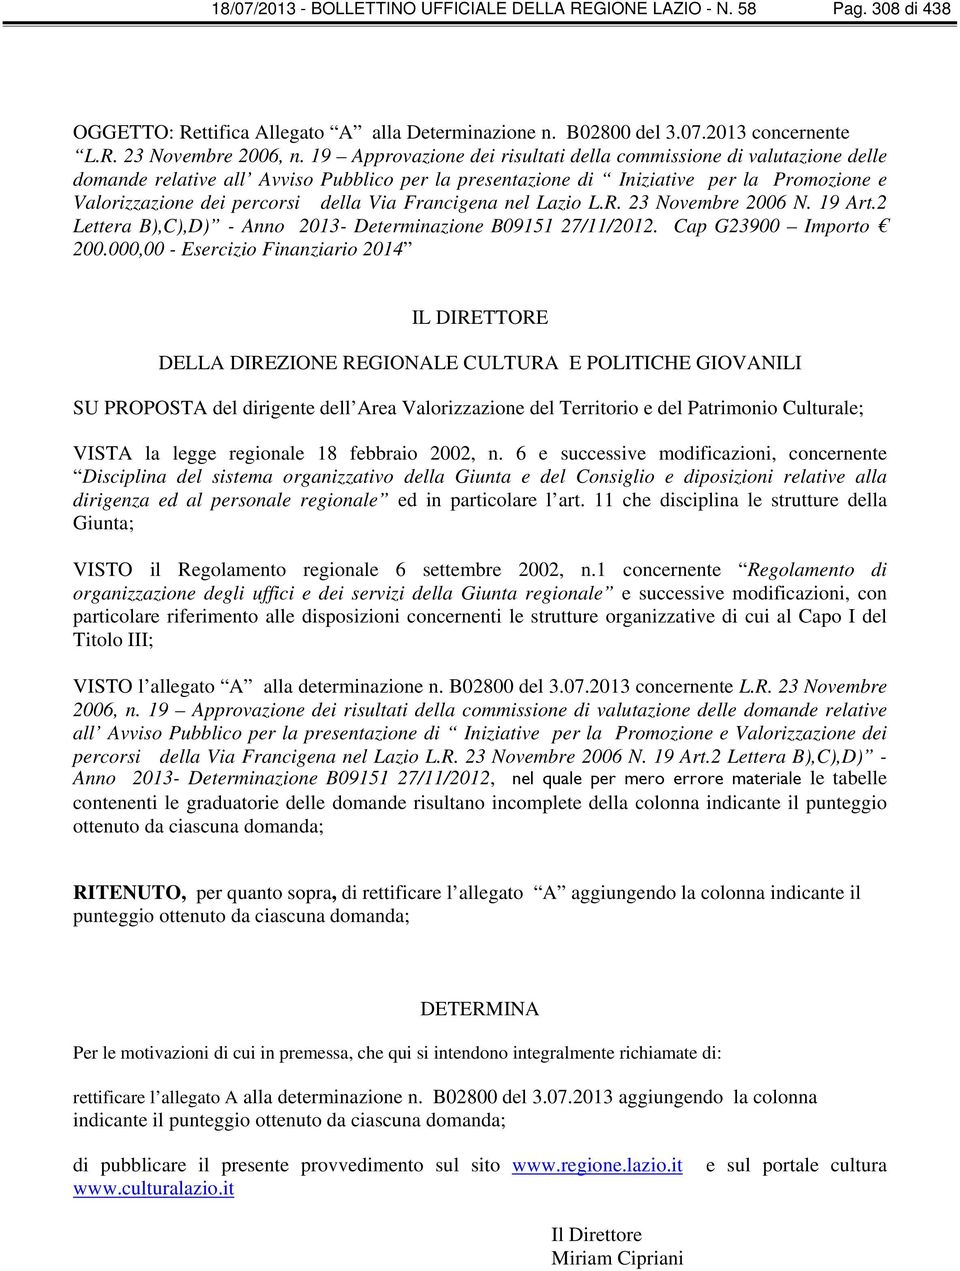 Francigena nel Lazio L.R. Novembre 06 N. 19 Art.2 Lettera B),C),D) - Anno 13- Determinazione B09151 27/11/12. Cap G900 Importo 0.